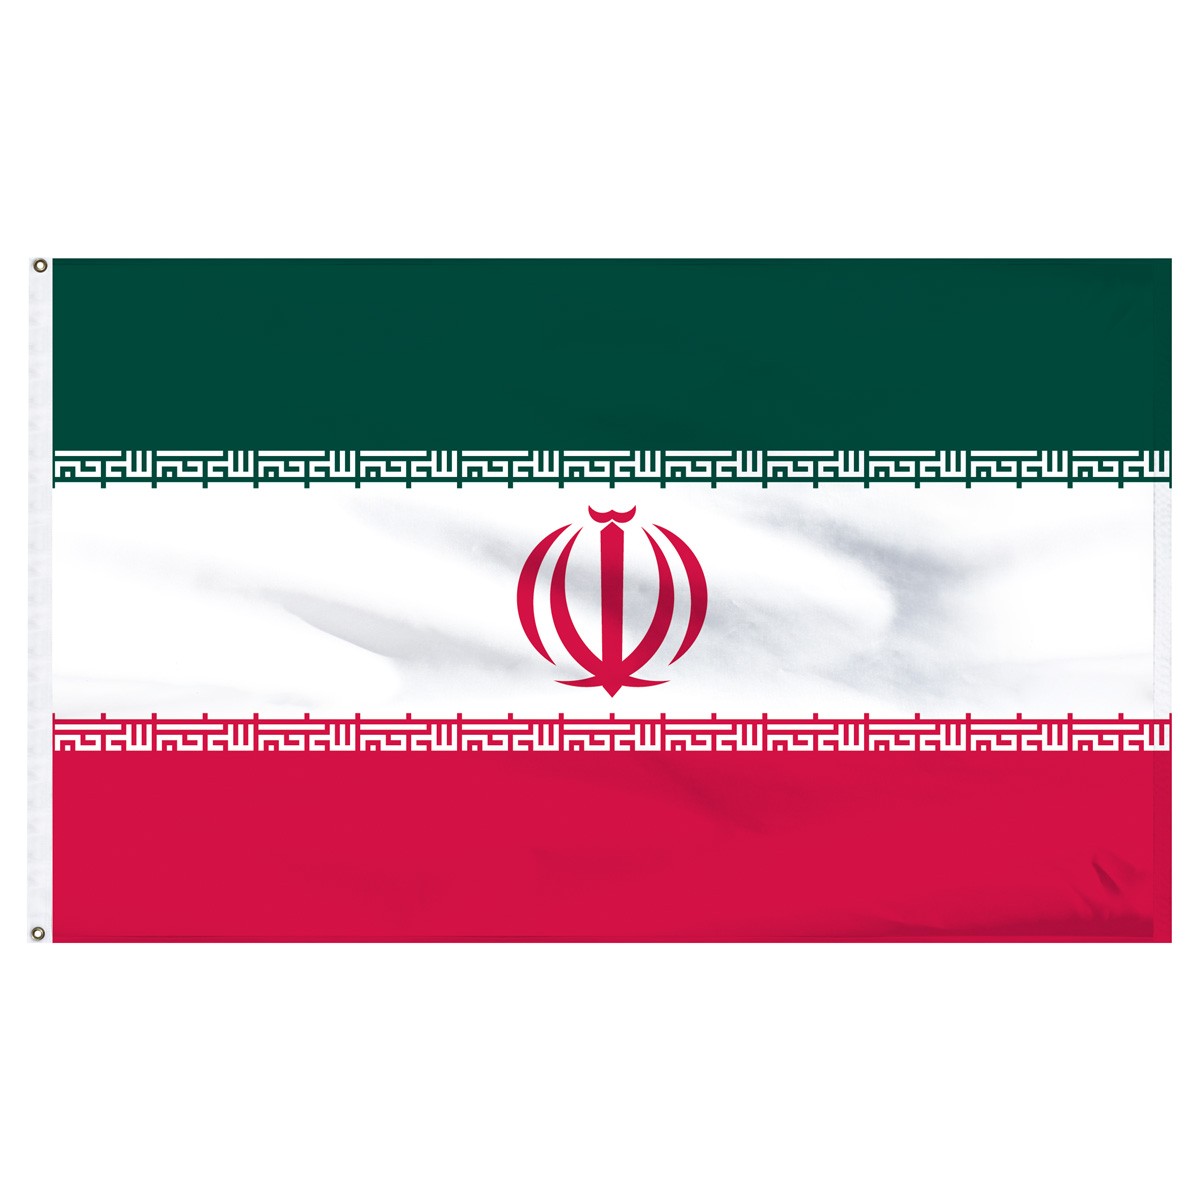 Iran Beach Flag and Sailing Flag